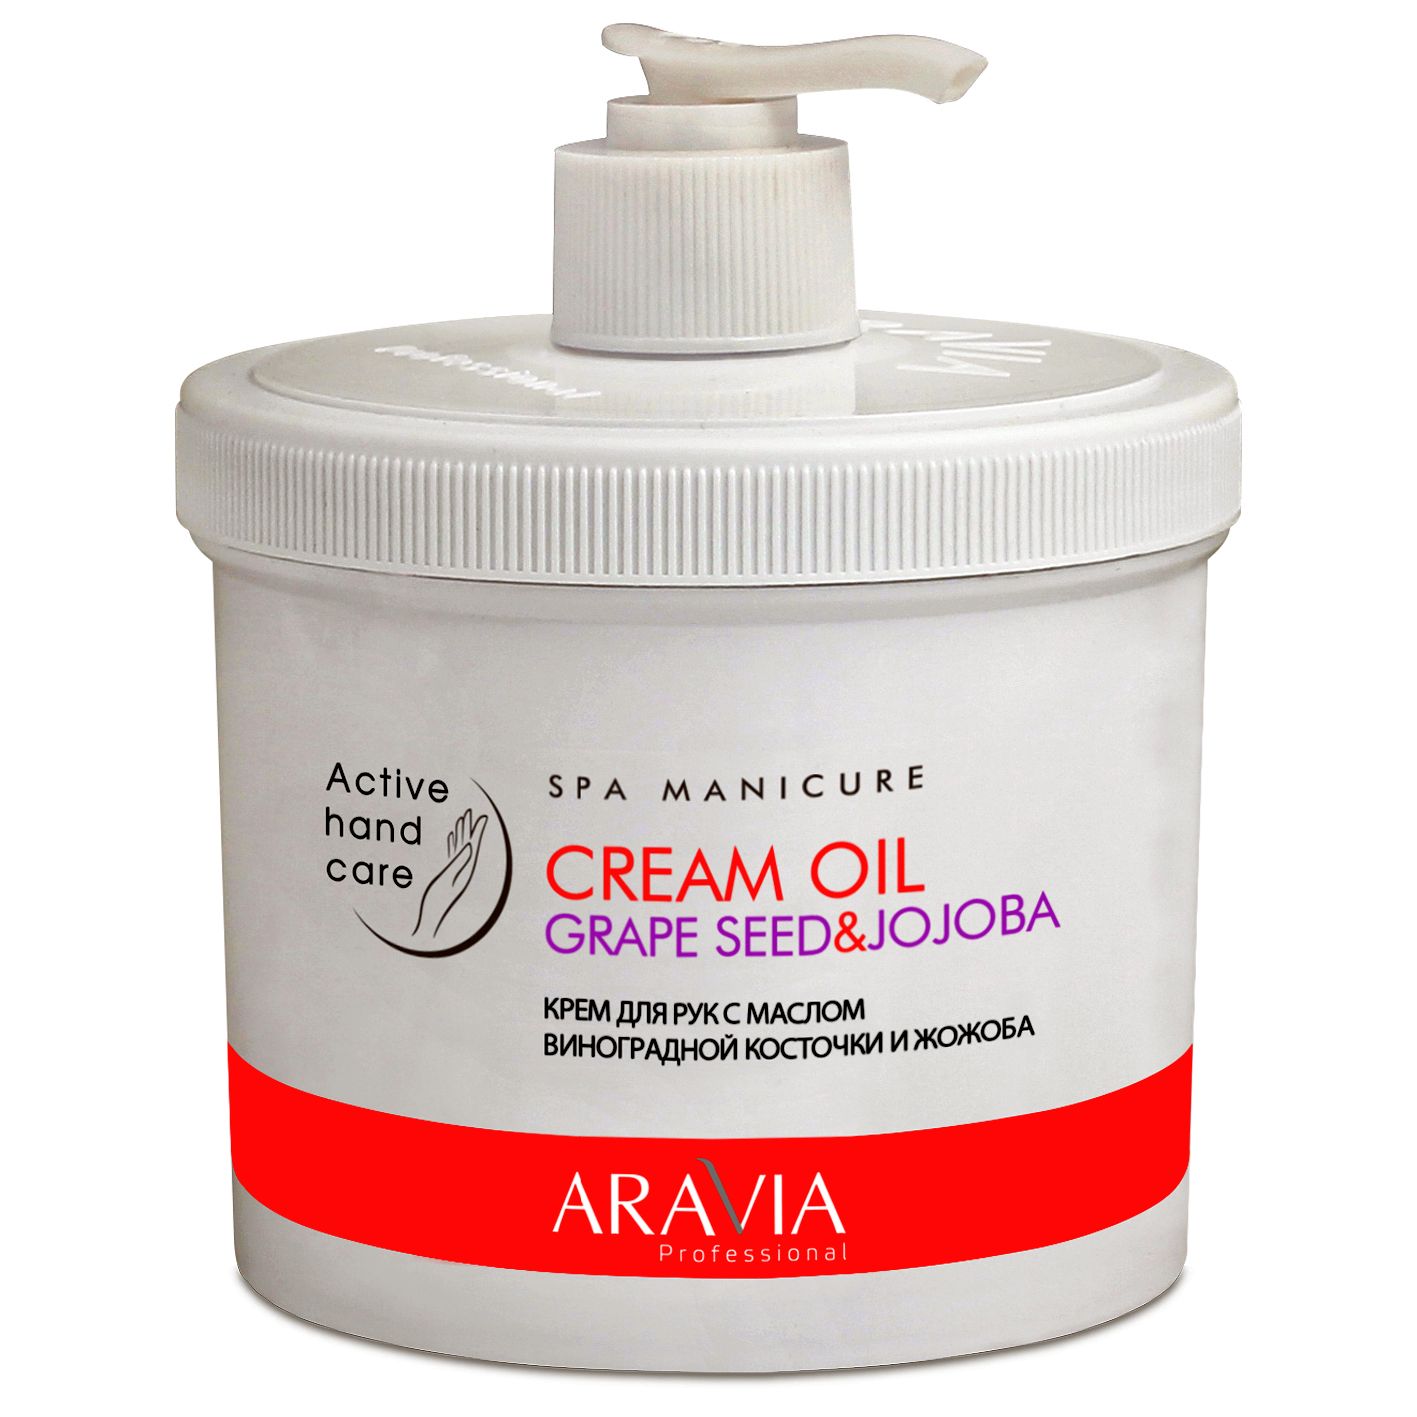 Aravia крем для рук с маслом виноградной косточки и жожоба cream oil 550мл (р)